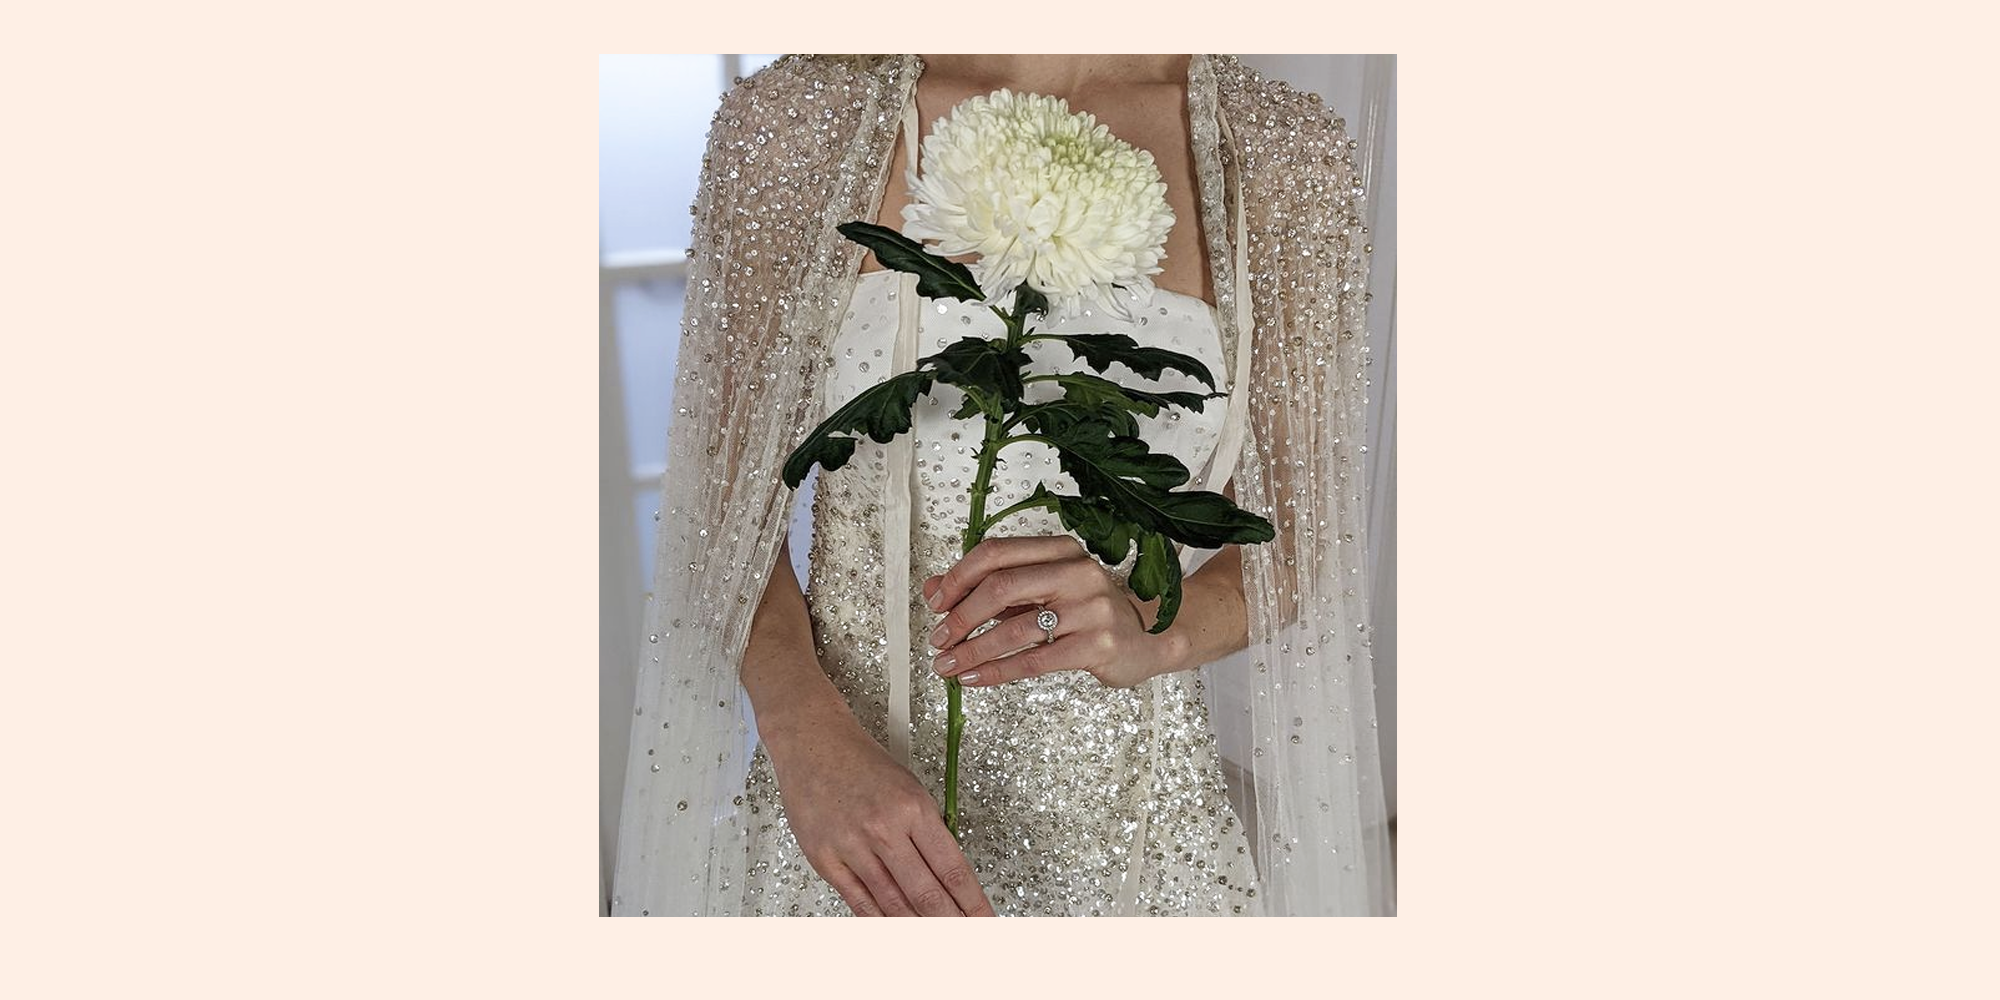 Stillwhite: New, Used, Preowned & Sample Wedding Dresses Online